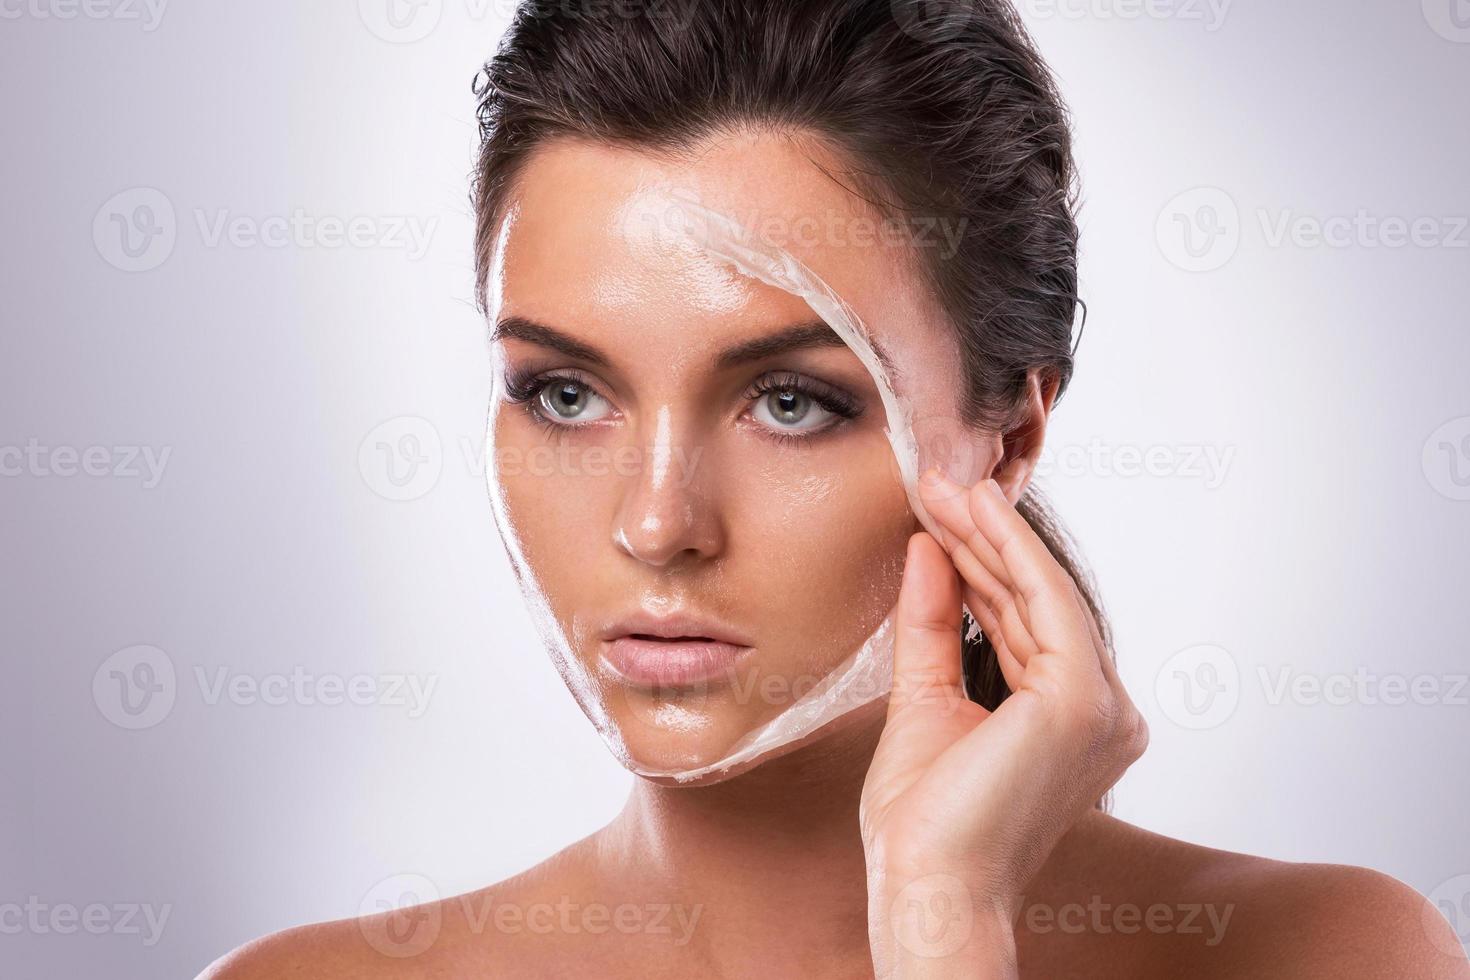 jeune femme avec un masque purifiant sur son visage photo